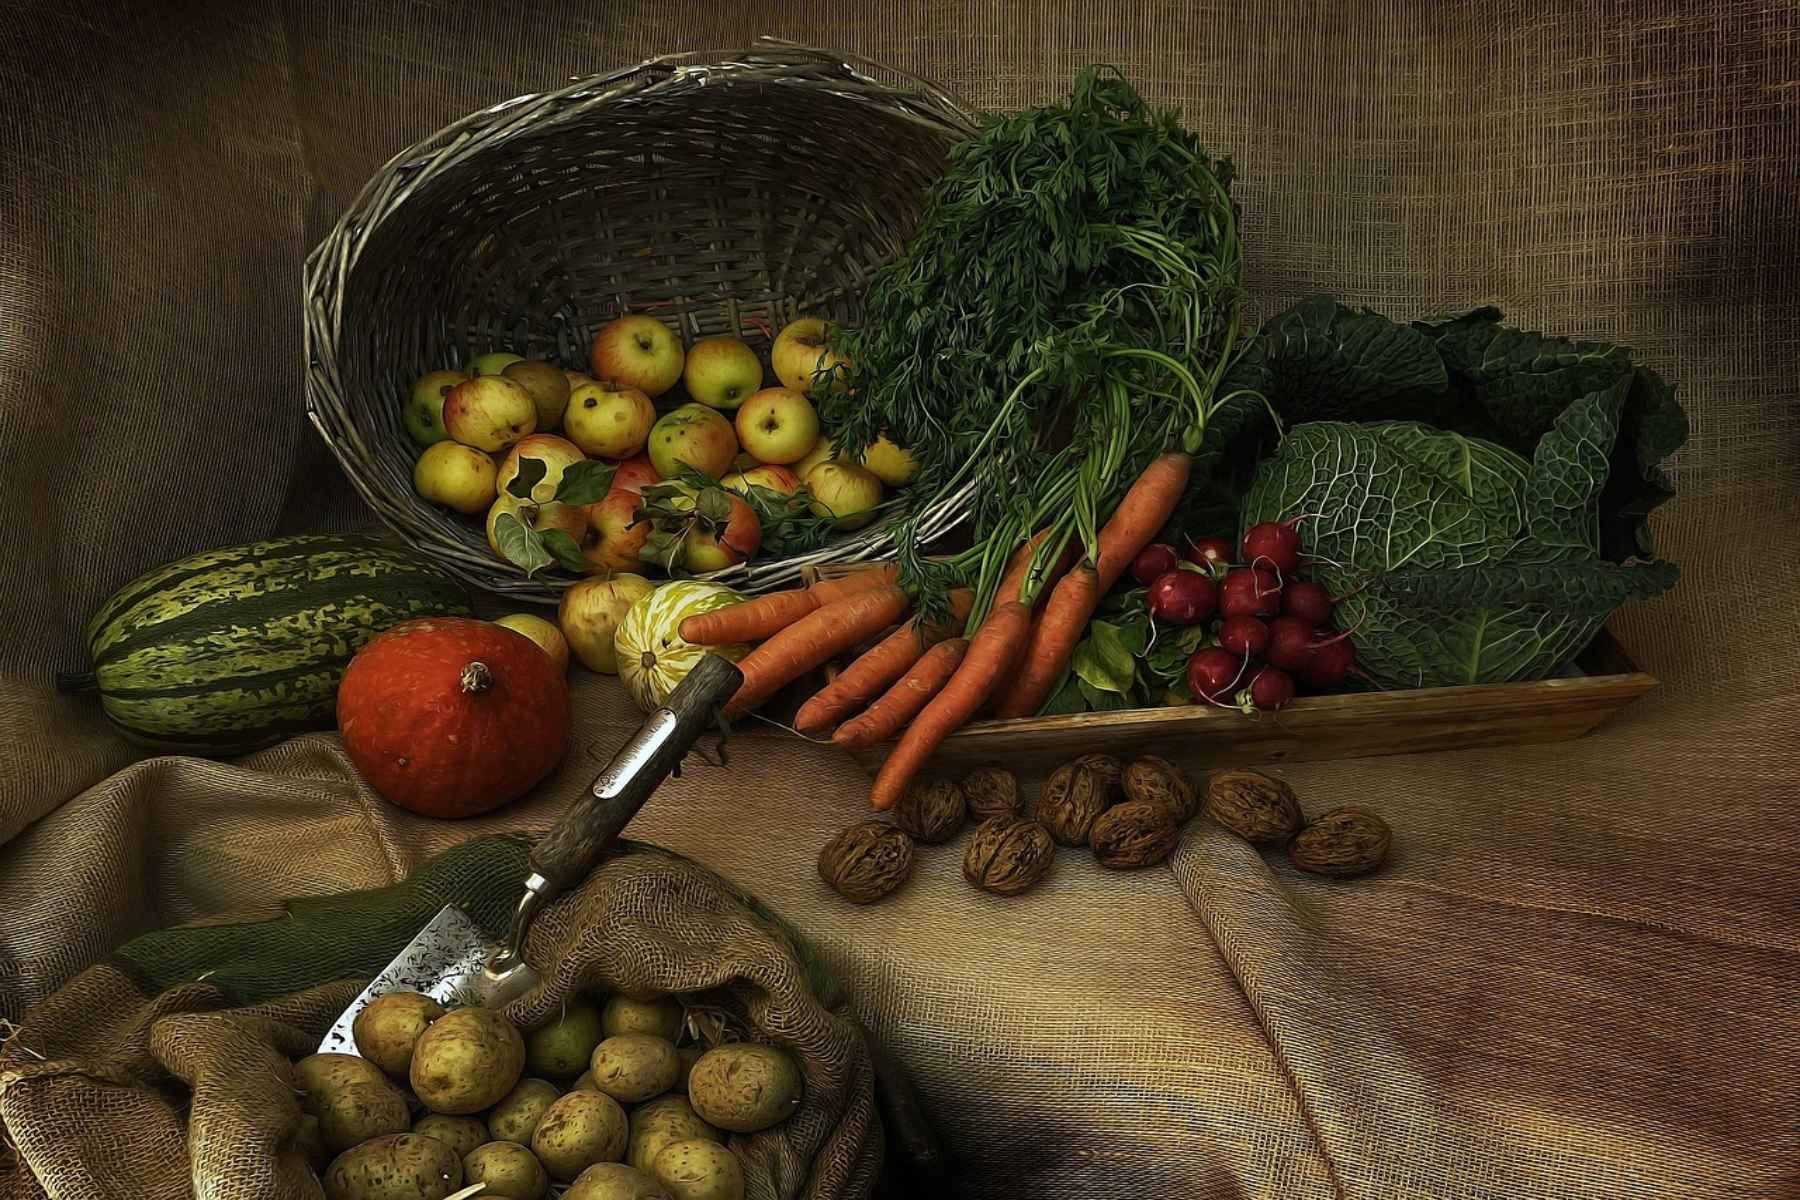 Μπιφτέκια λαχανικών: Ιδανική συνταγή για τη Σαρακοστή